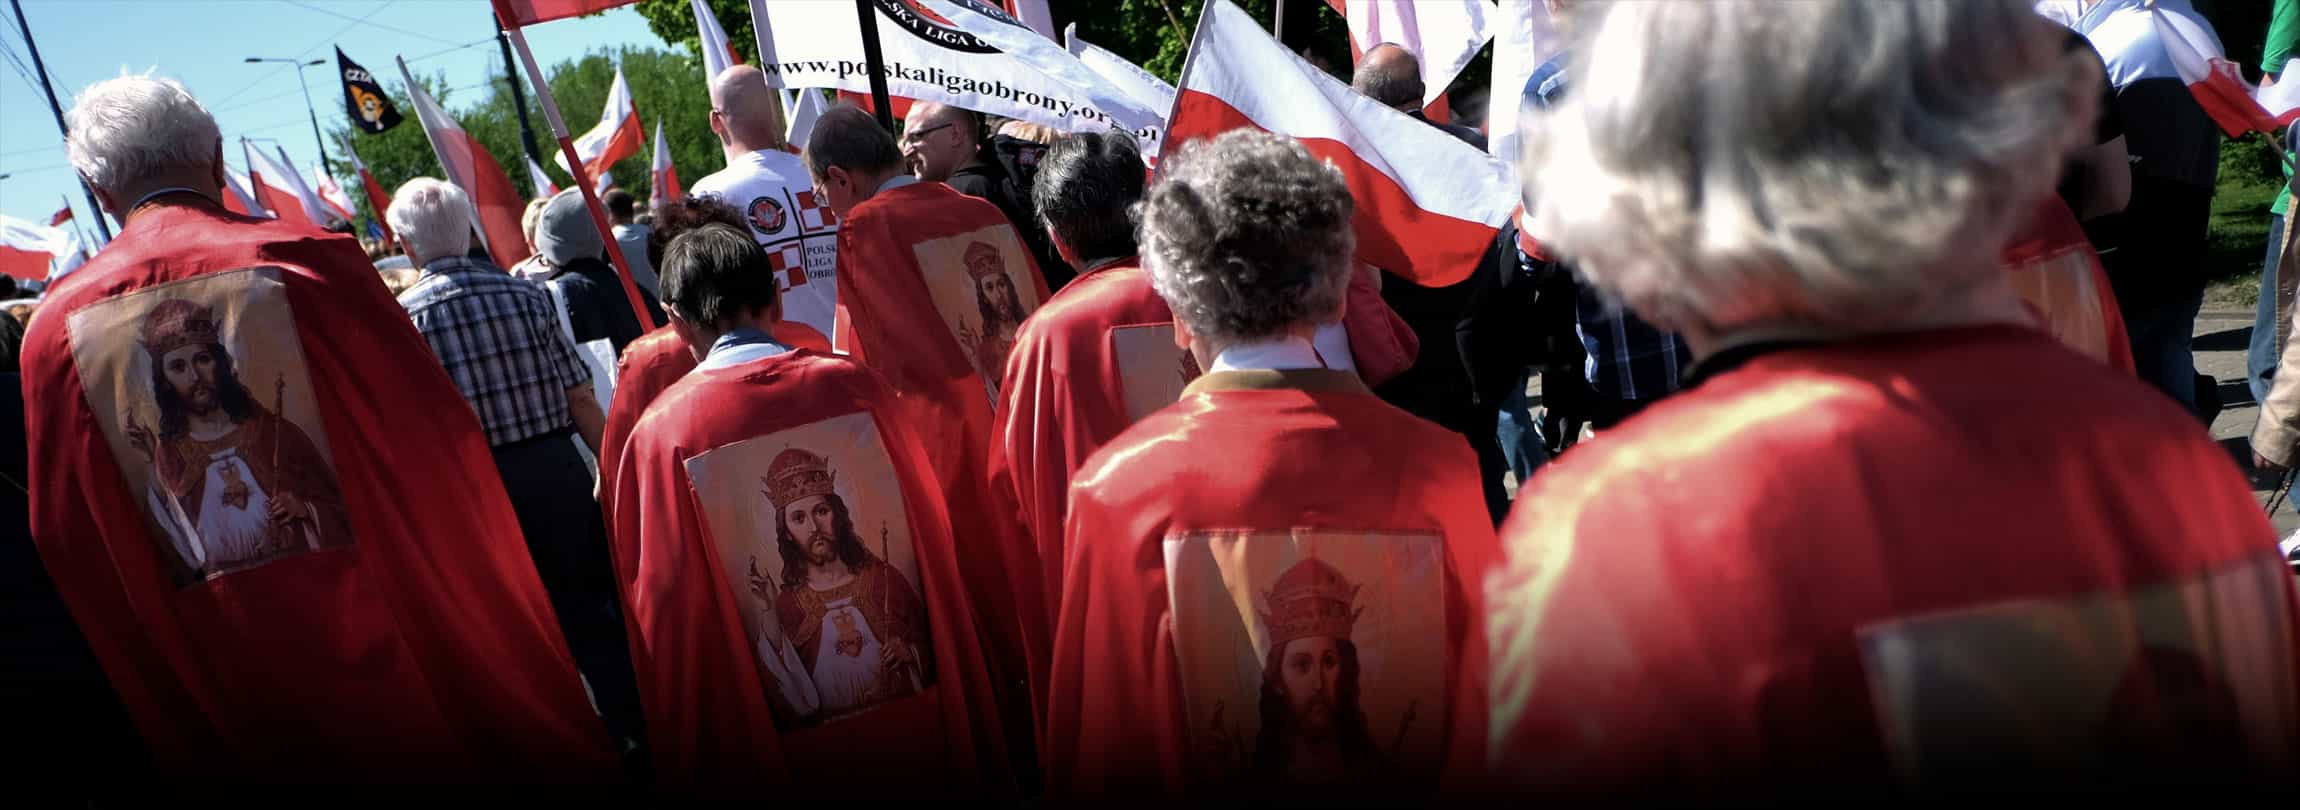 Jesus Cristo é entronizado como Rei da Polônia